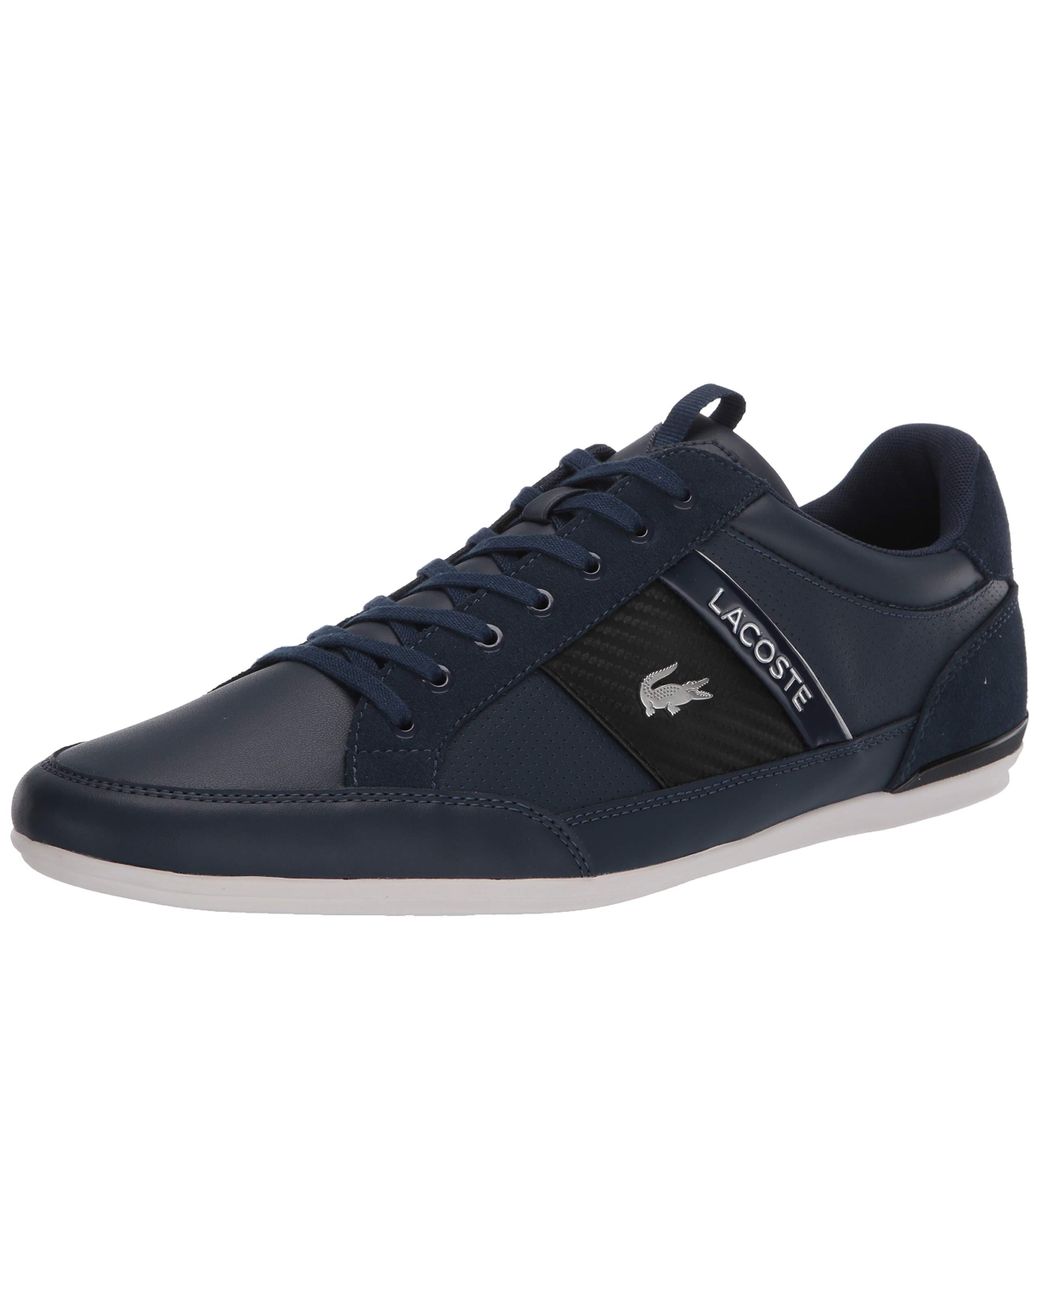 Lacoste Leather Mens Chaymon 120 7 U Cma Sneaker in Blue for Men - Lyst